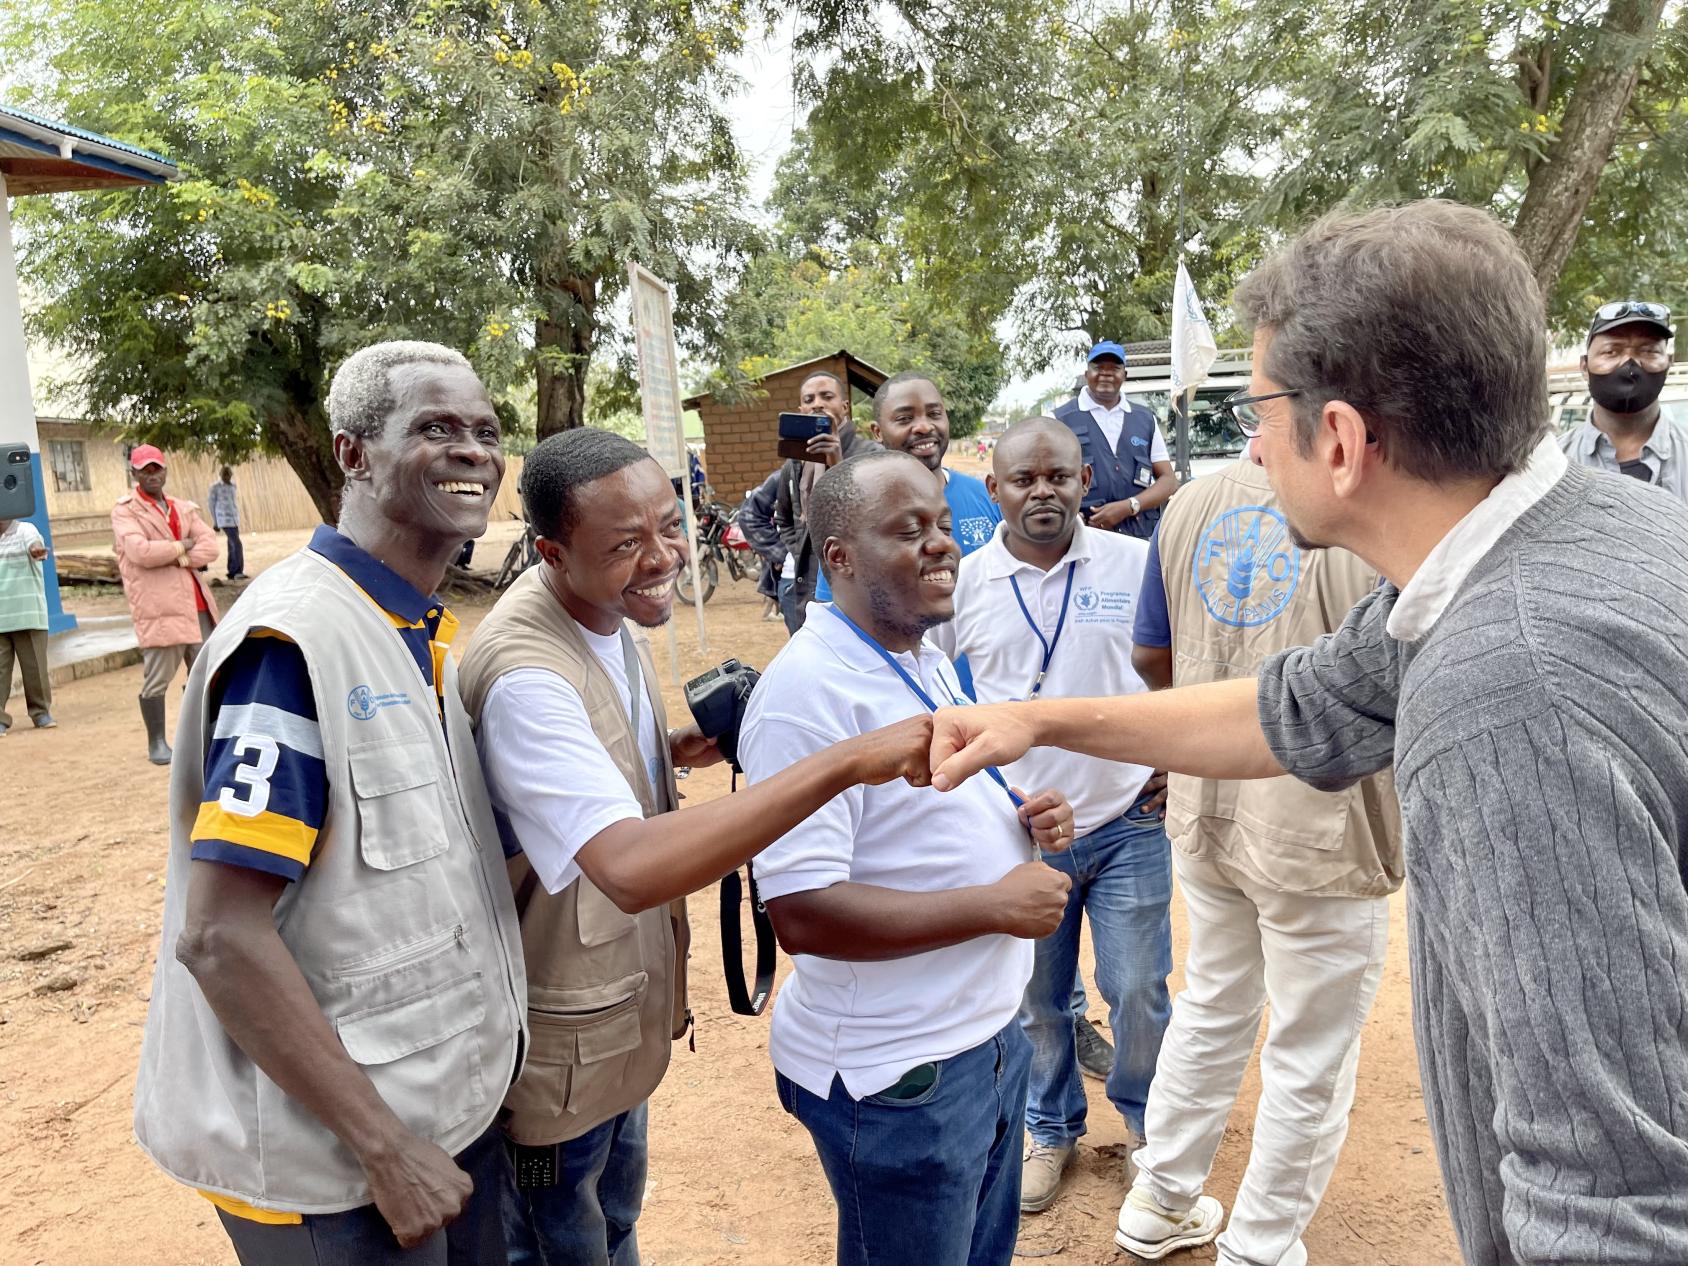 يلتقي المنسق المقيم ومنسق الشؤون الإنسانية برونو ليماركيس بالعاملين في موقع للمشردين داخليًا في تنجانيقا، جمهورية الكونغو الديمقراطية